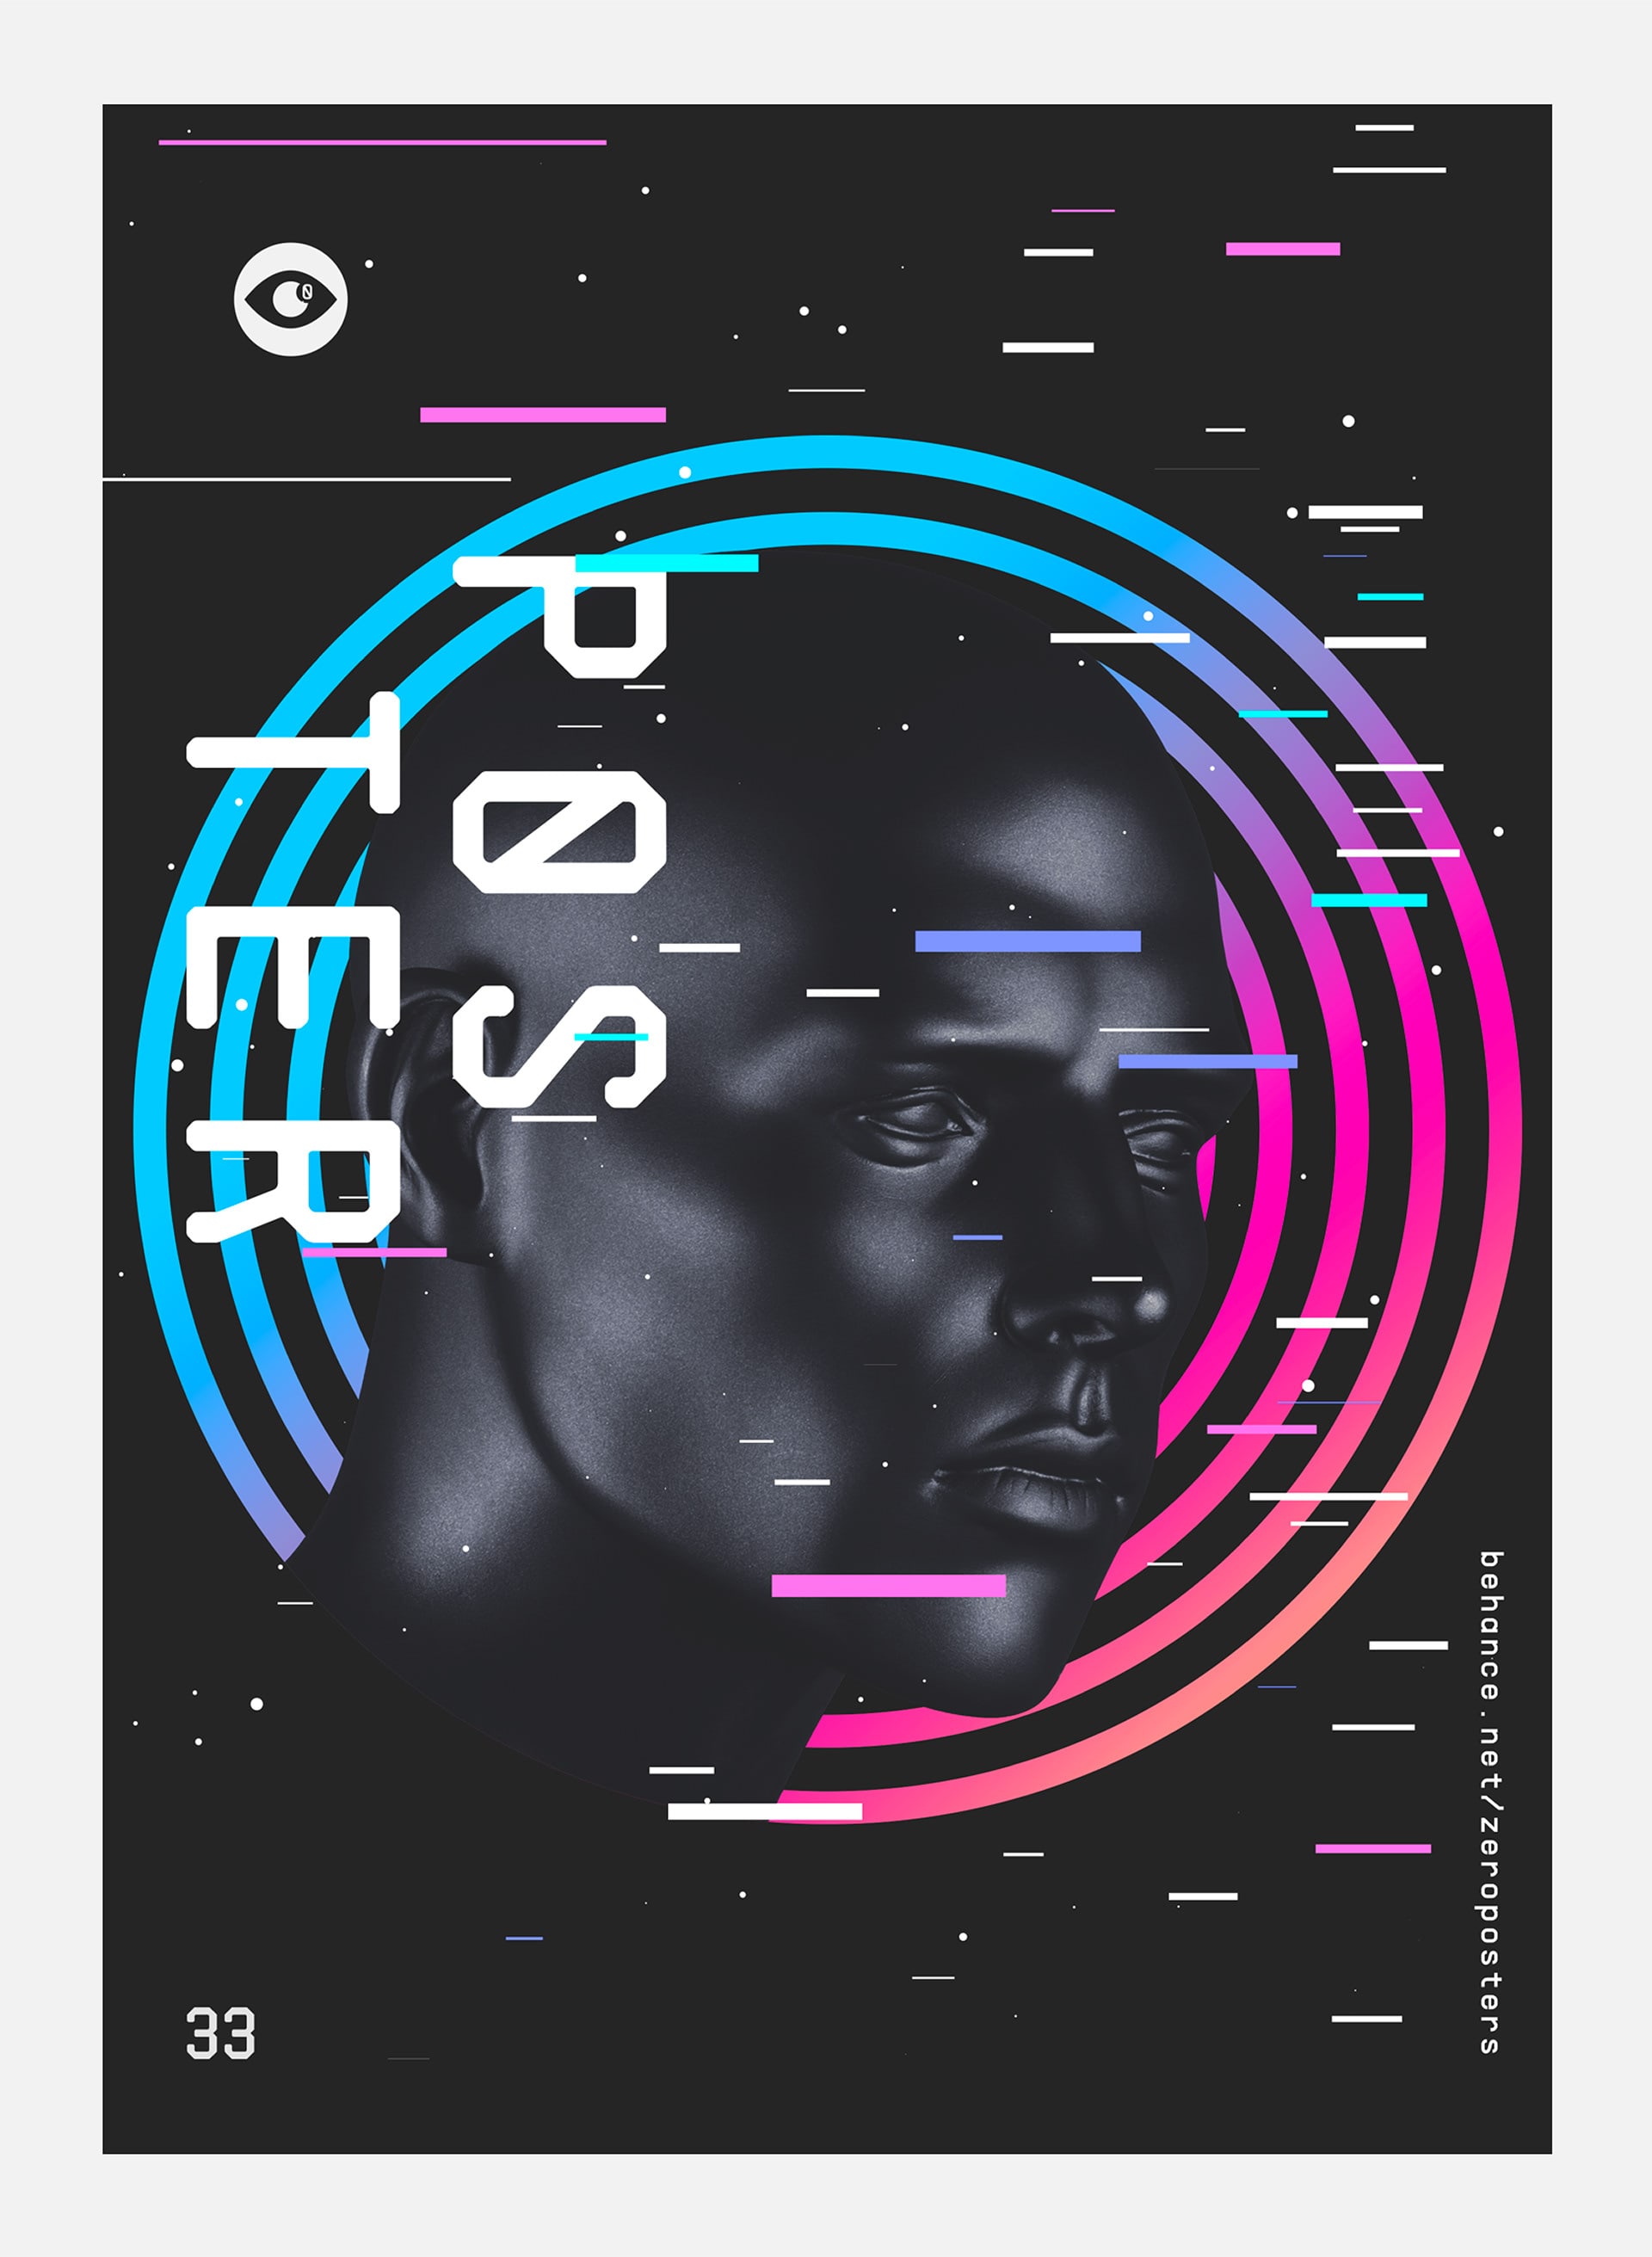 创意实验平台: Zero Posters新的海报设计形式探索